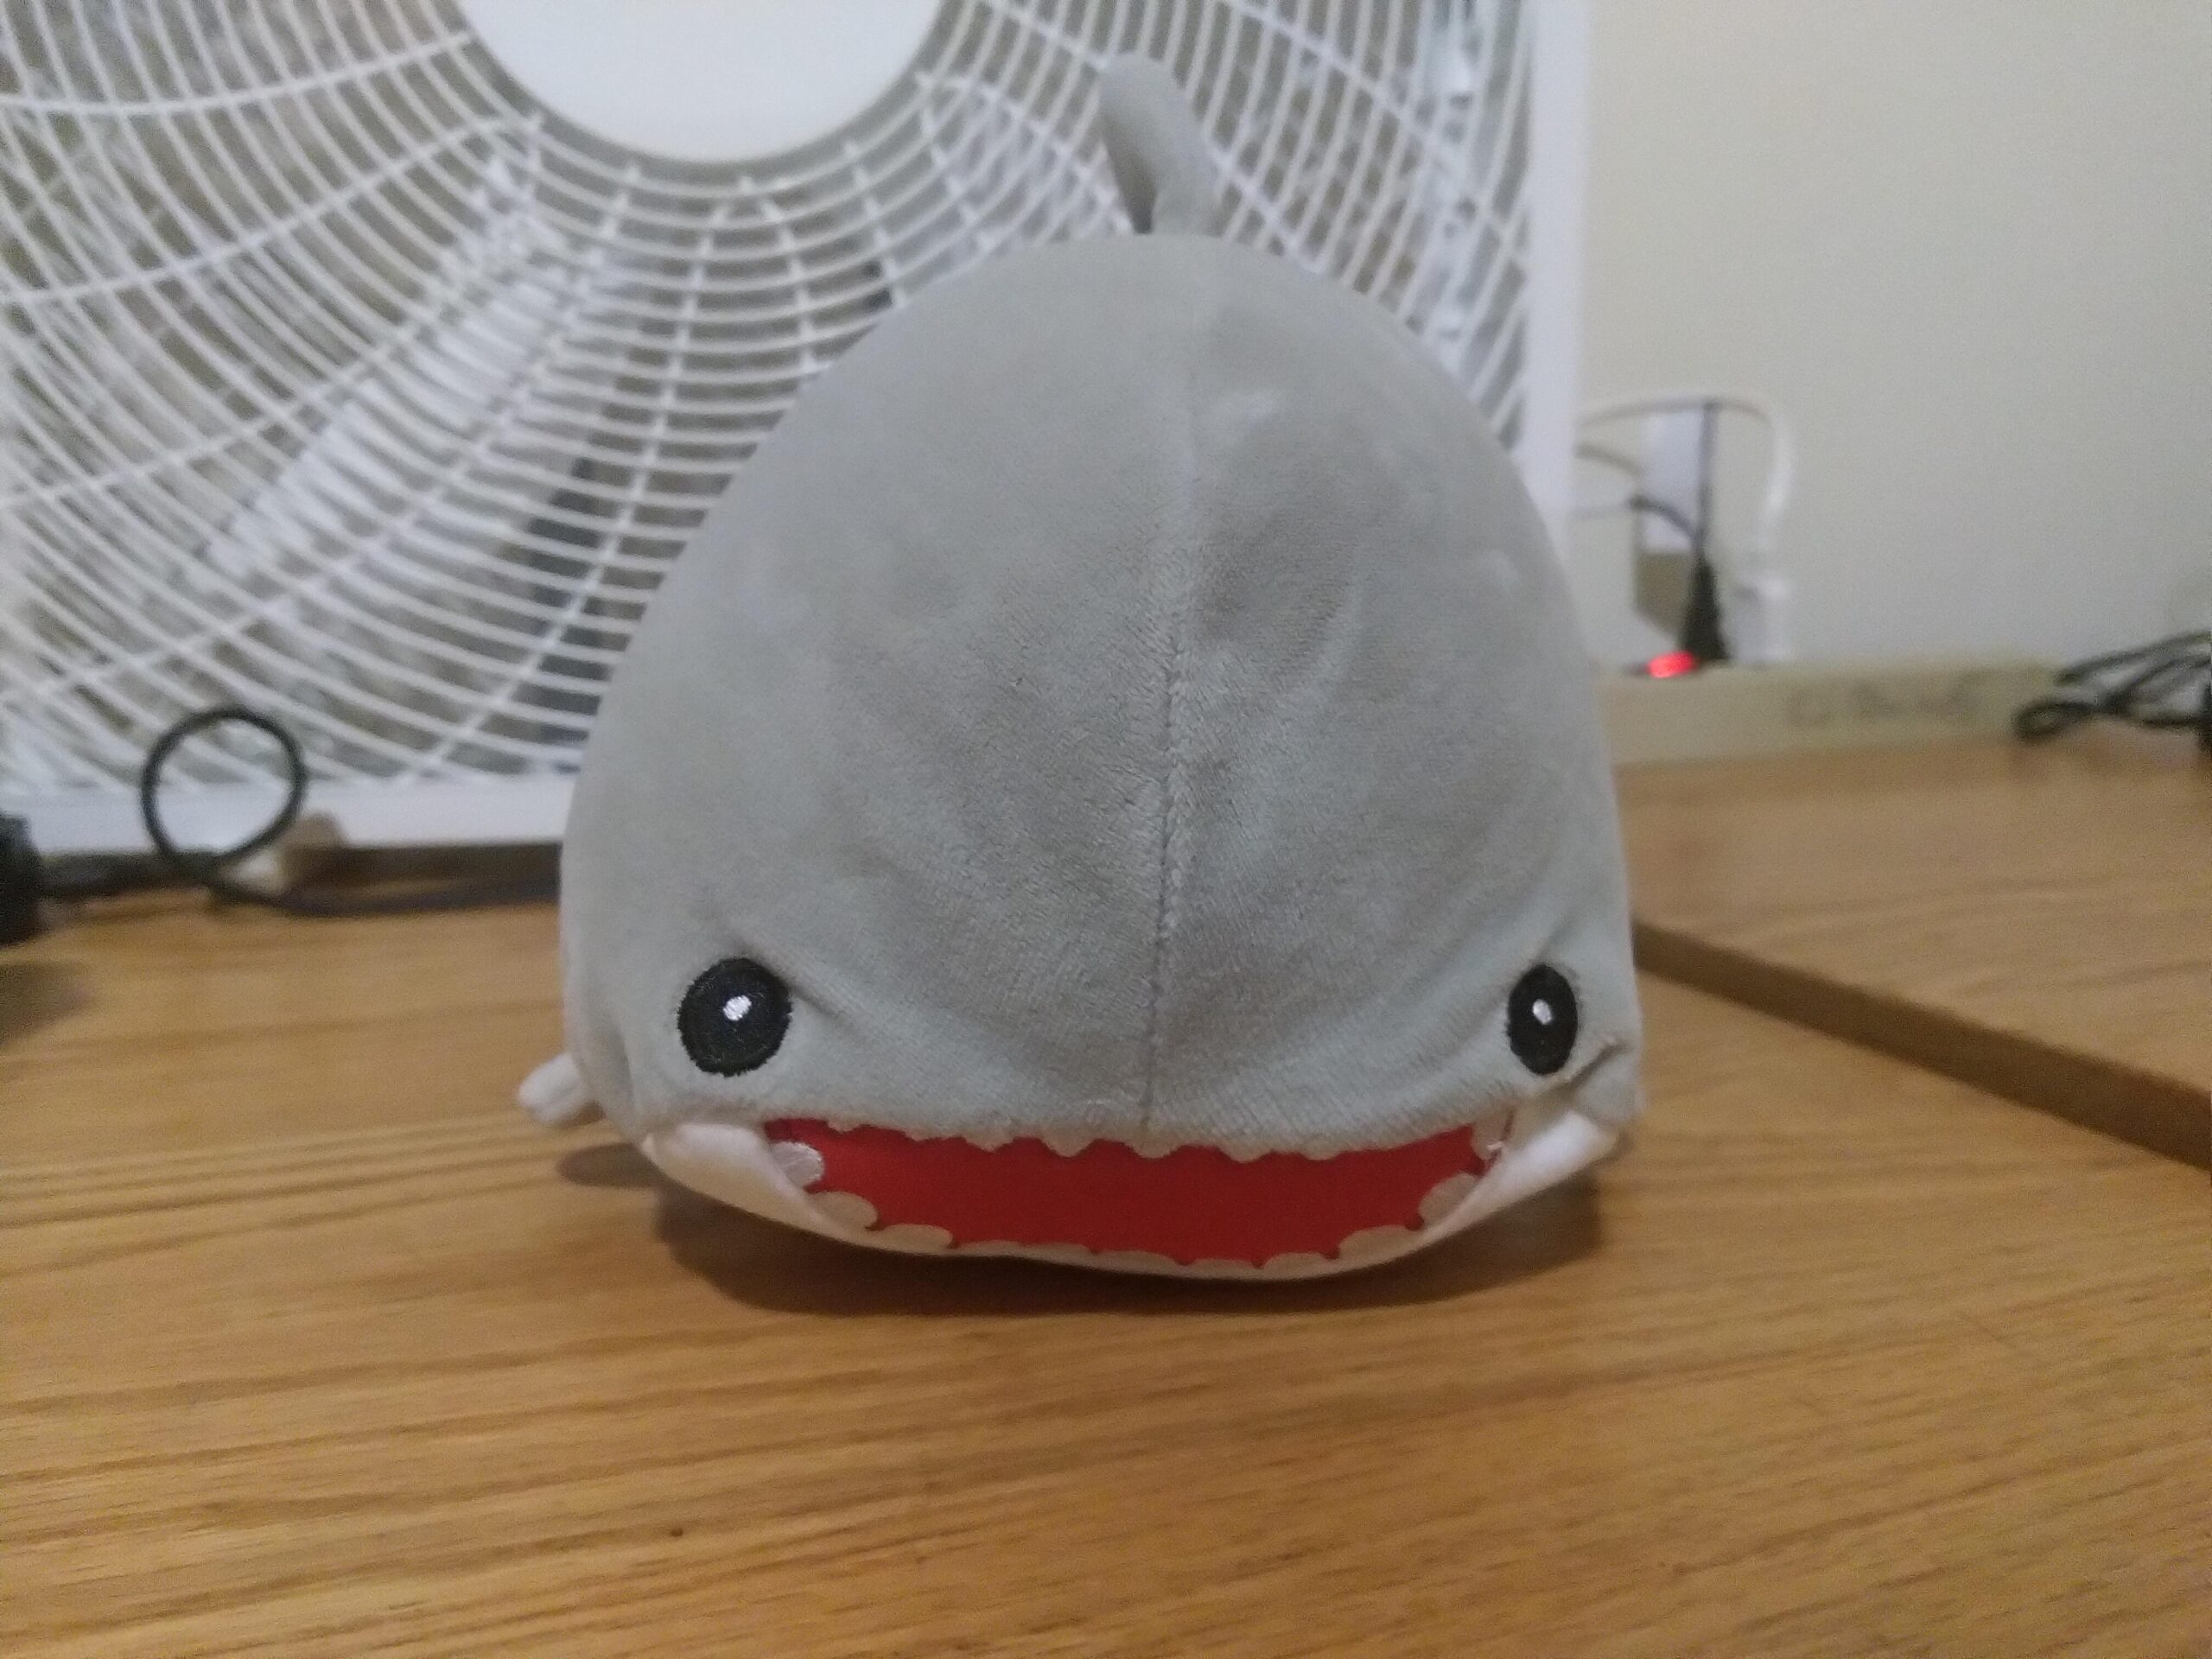 a very cute shark plushie